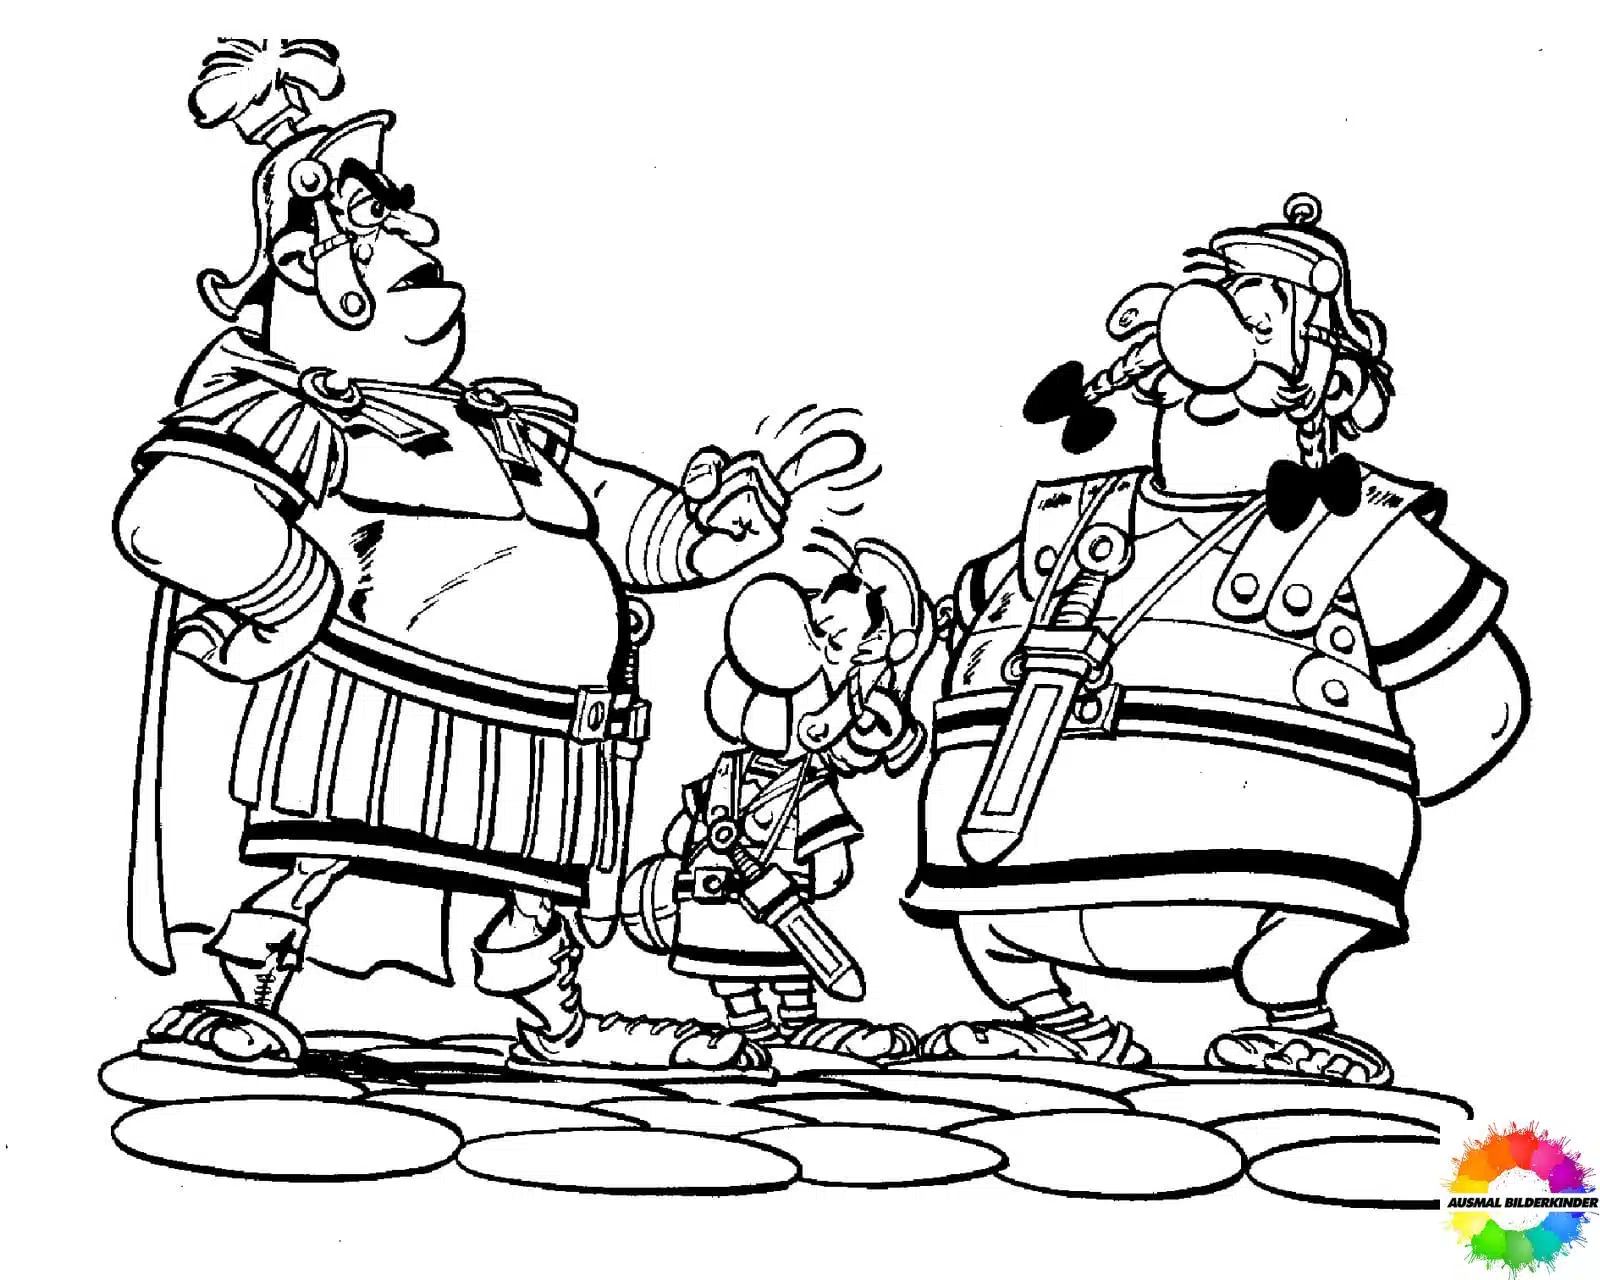 Asterix and Obelix 11